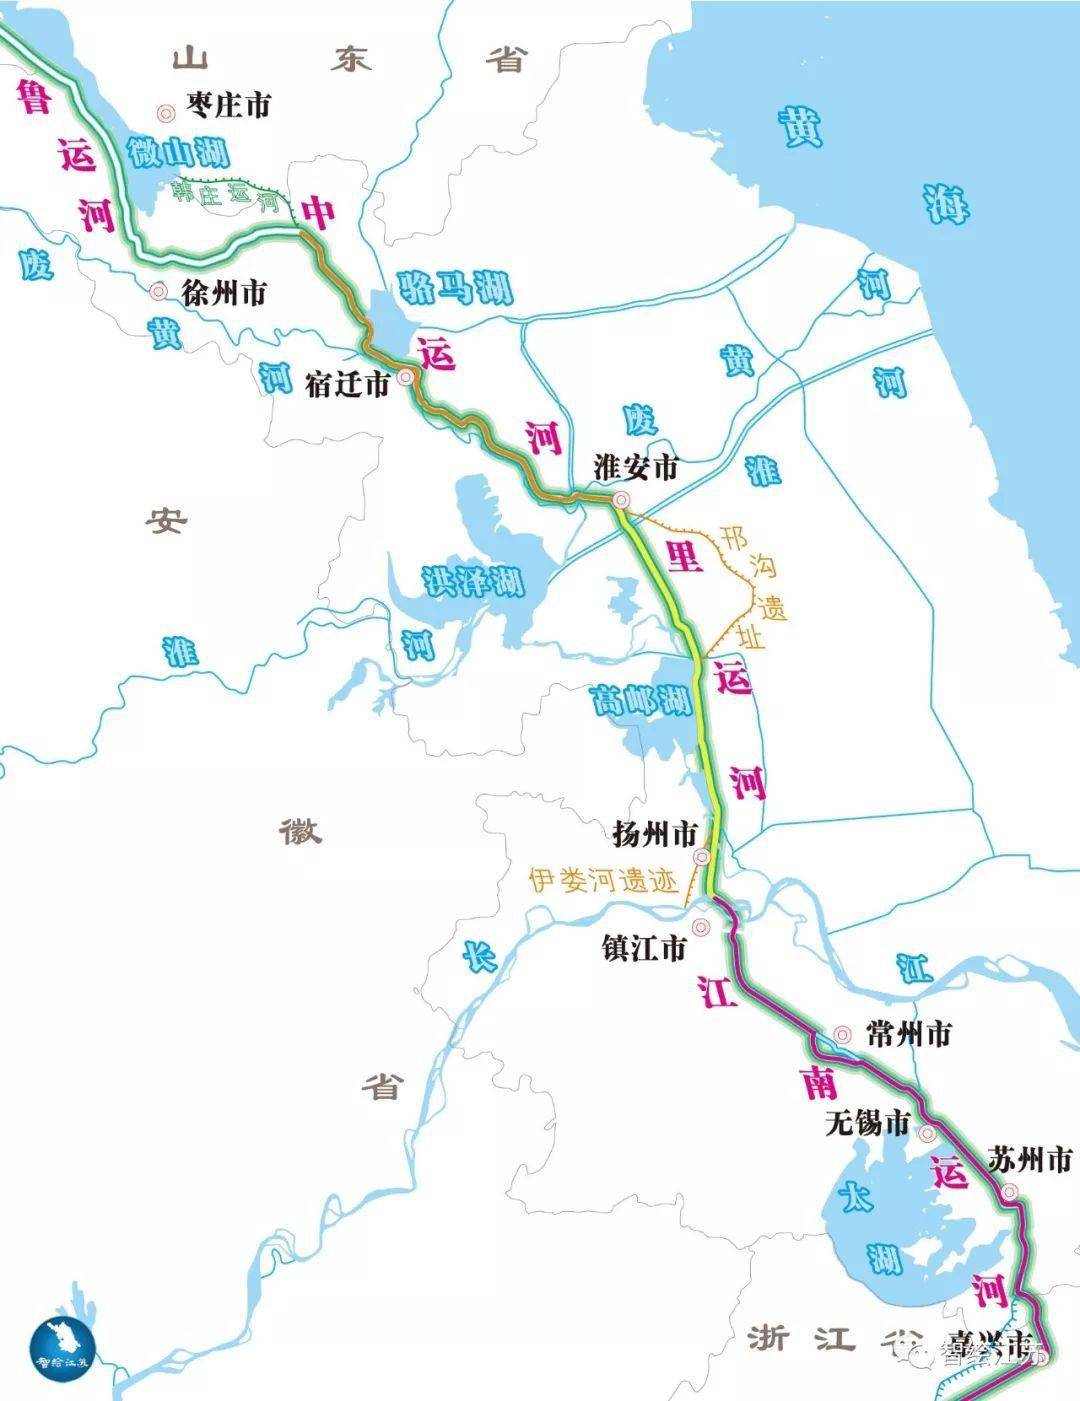 地图看京杭运河的前世今生(江苏段)-搜狐大视野-搜狐